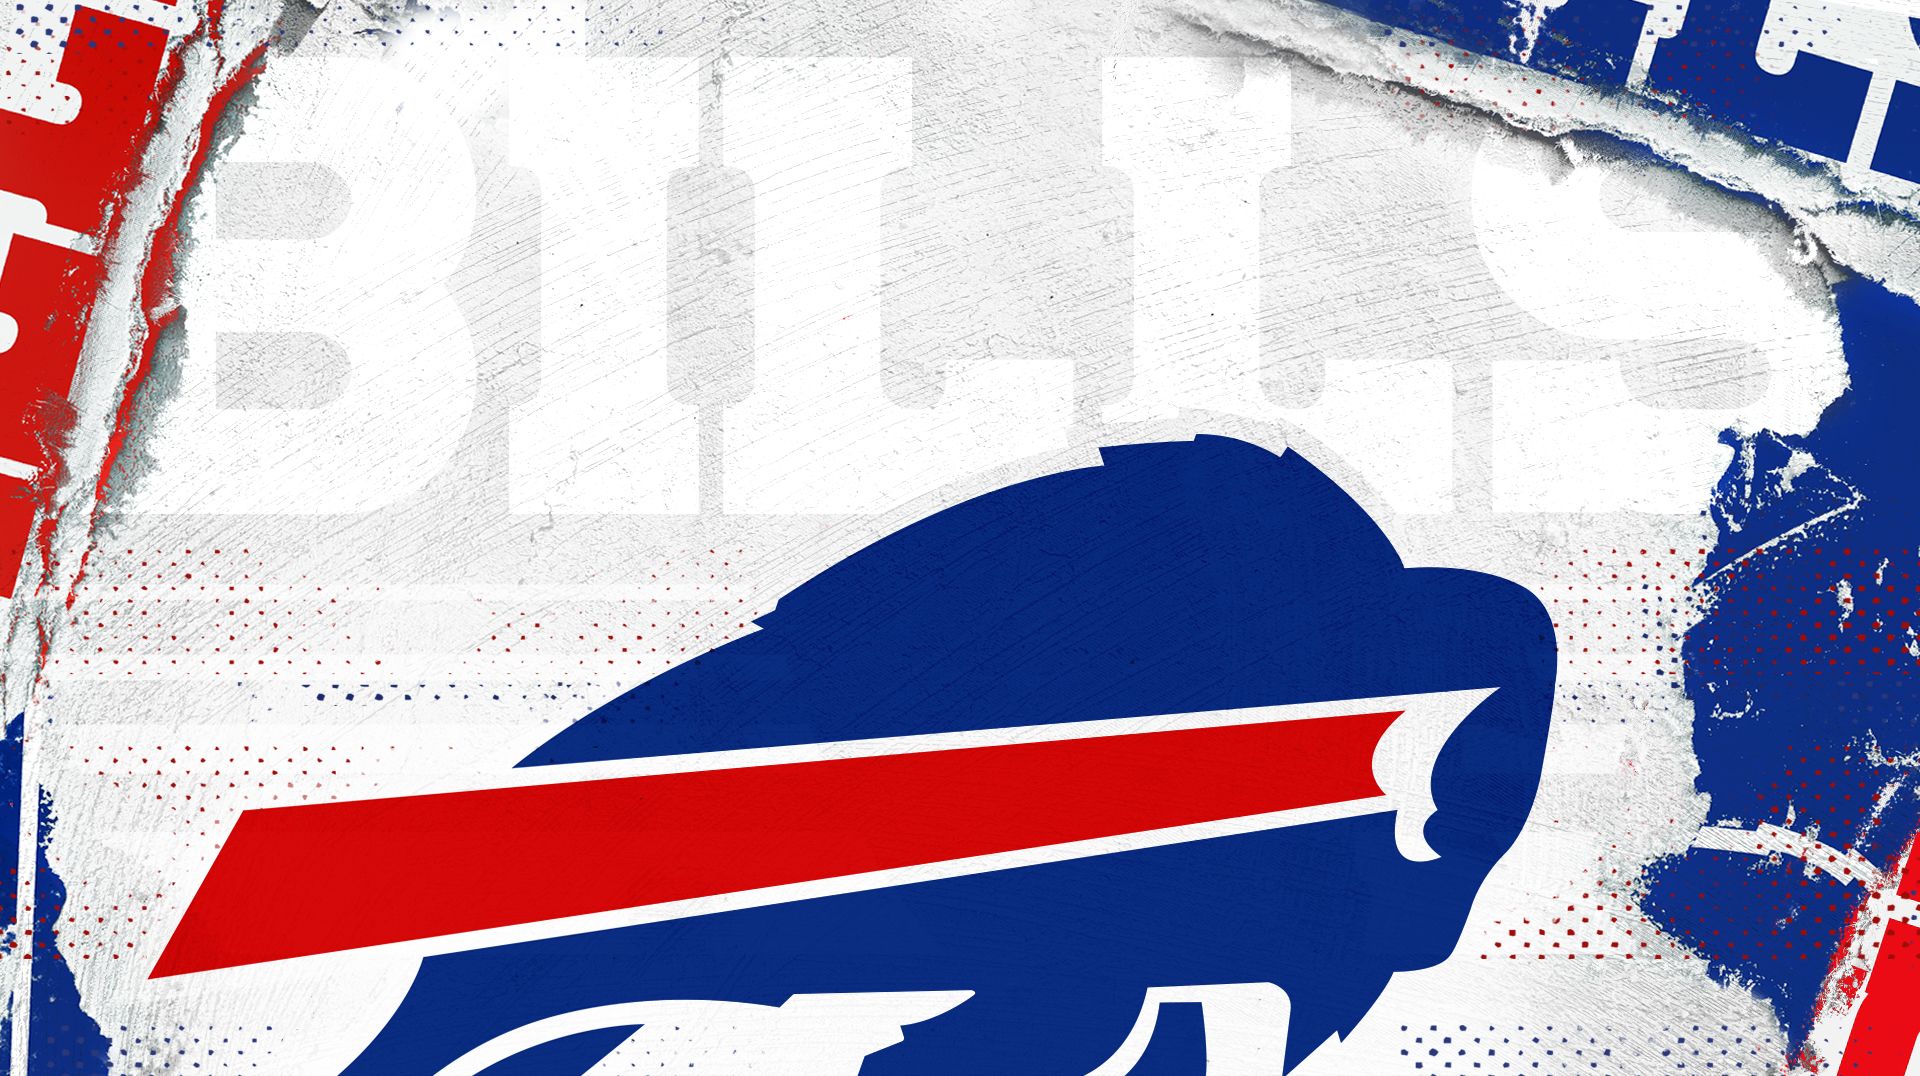 Buffalo Bills Team Logo , HD Wallpaper & Backgrounds